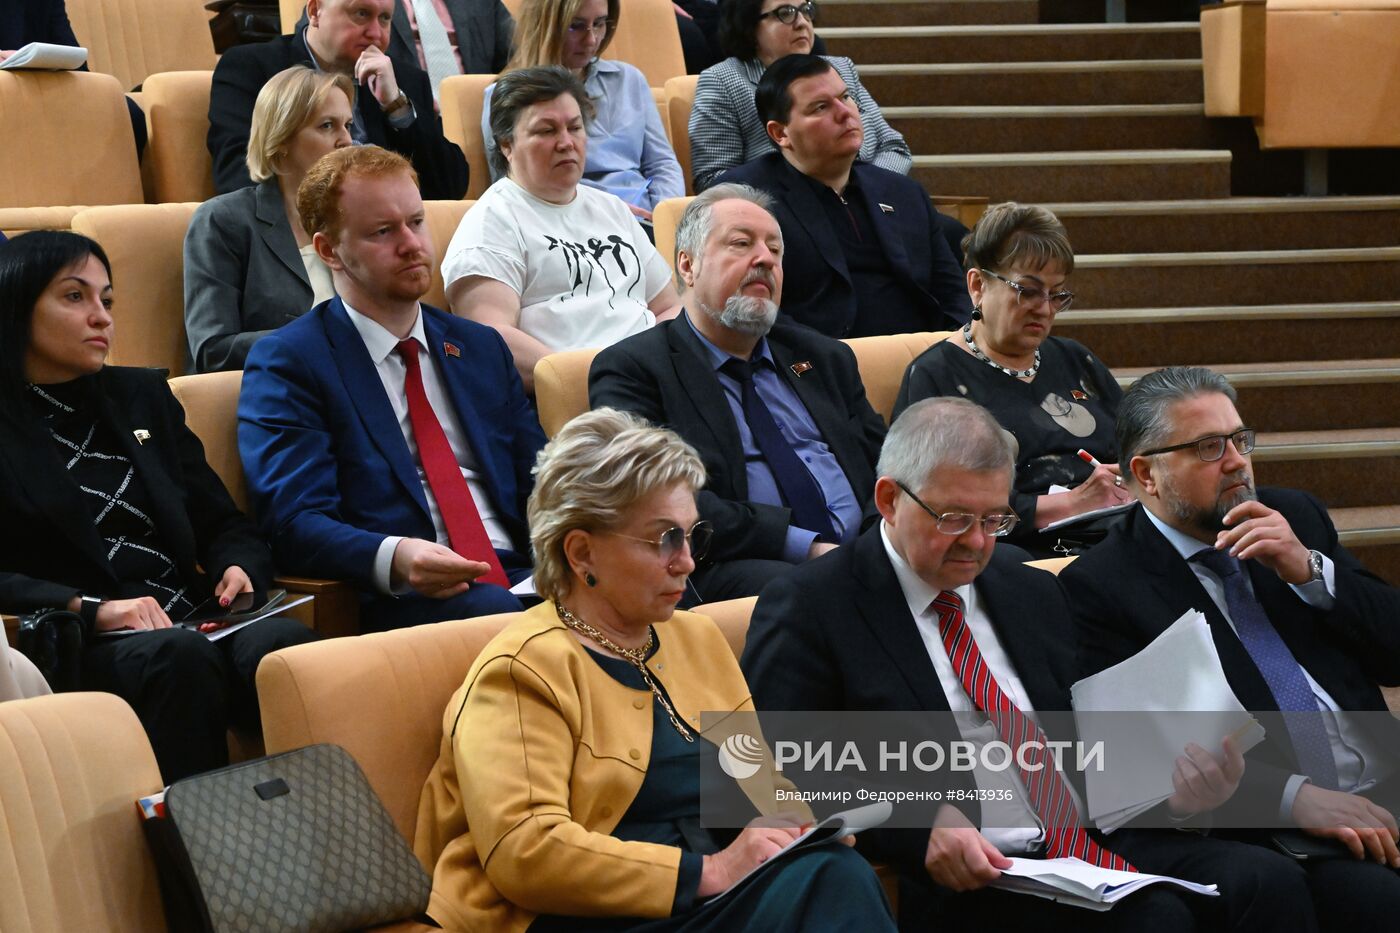 Встреча фракции КПРФ в Госдуме с главой Центробанка Э. Набиуллиной